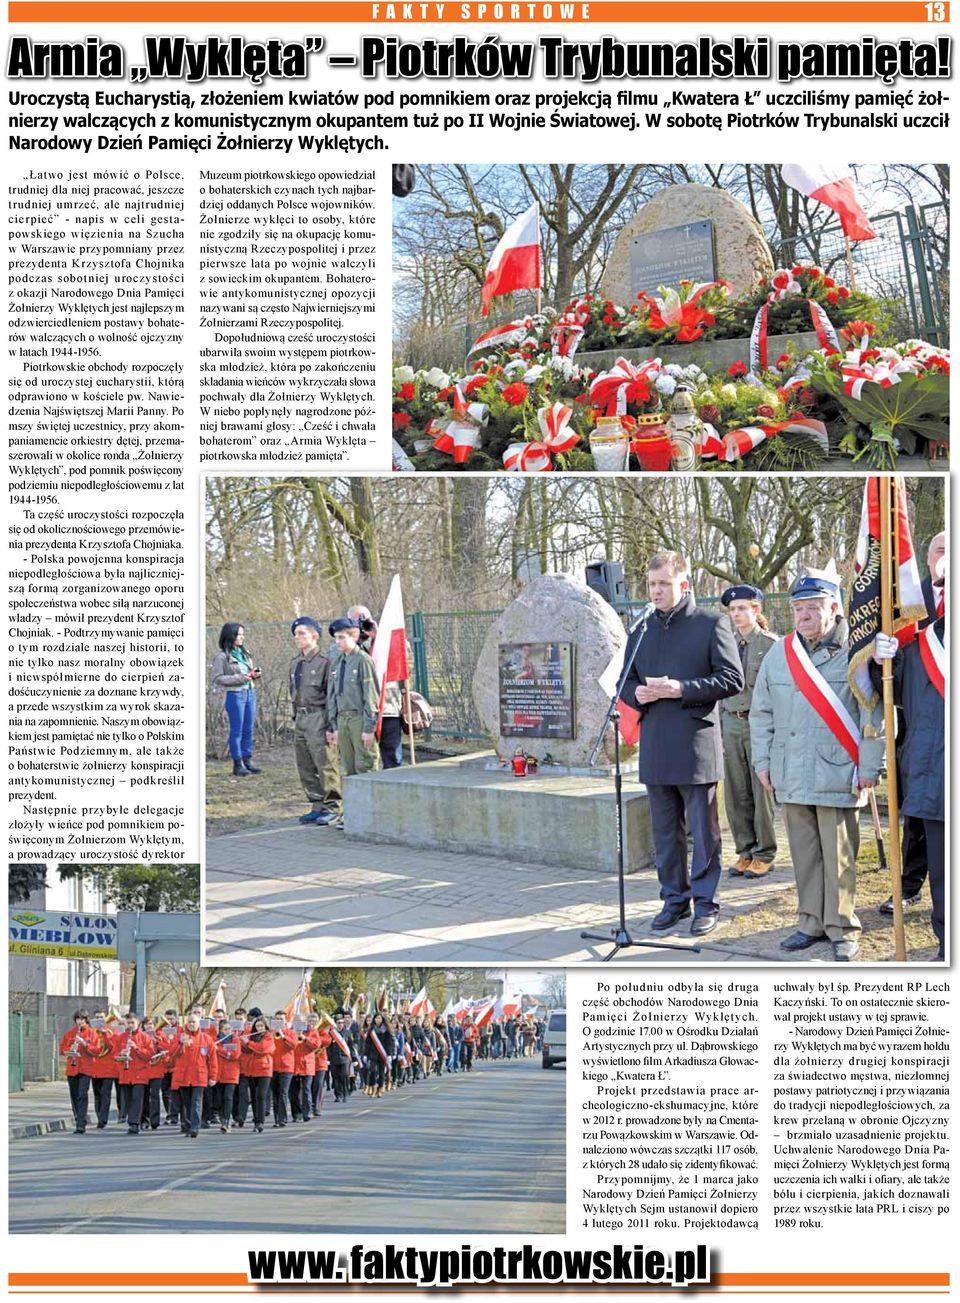 W sobotę Piotrków Trybunalski uczcił Narodowy Dzień Pamięci Żołnierzy Wyklętych.